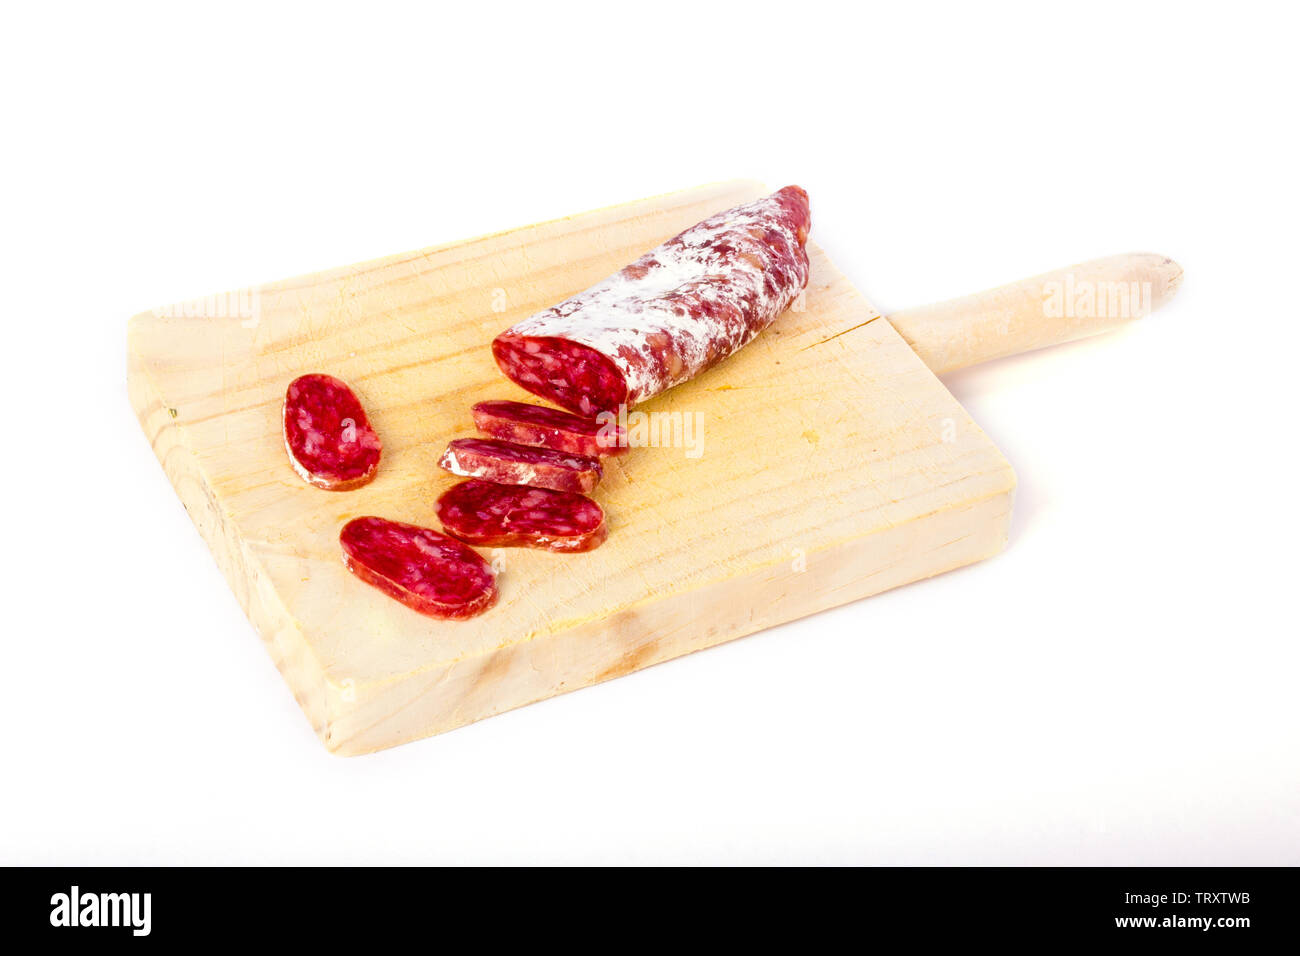 Spanisch fuet, eine trockene Wurst typische in Katalonien Region, in Scheiben geschnitten auf einer hölzernen Küchentisch Stockfoto